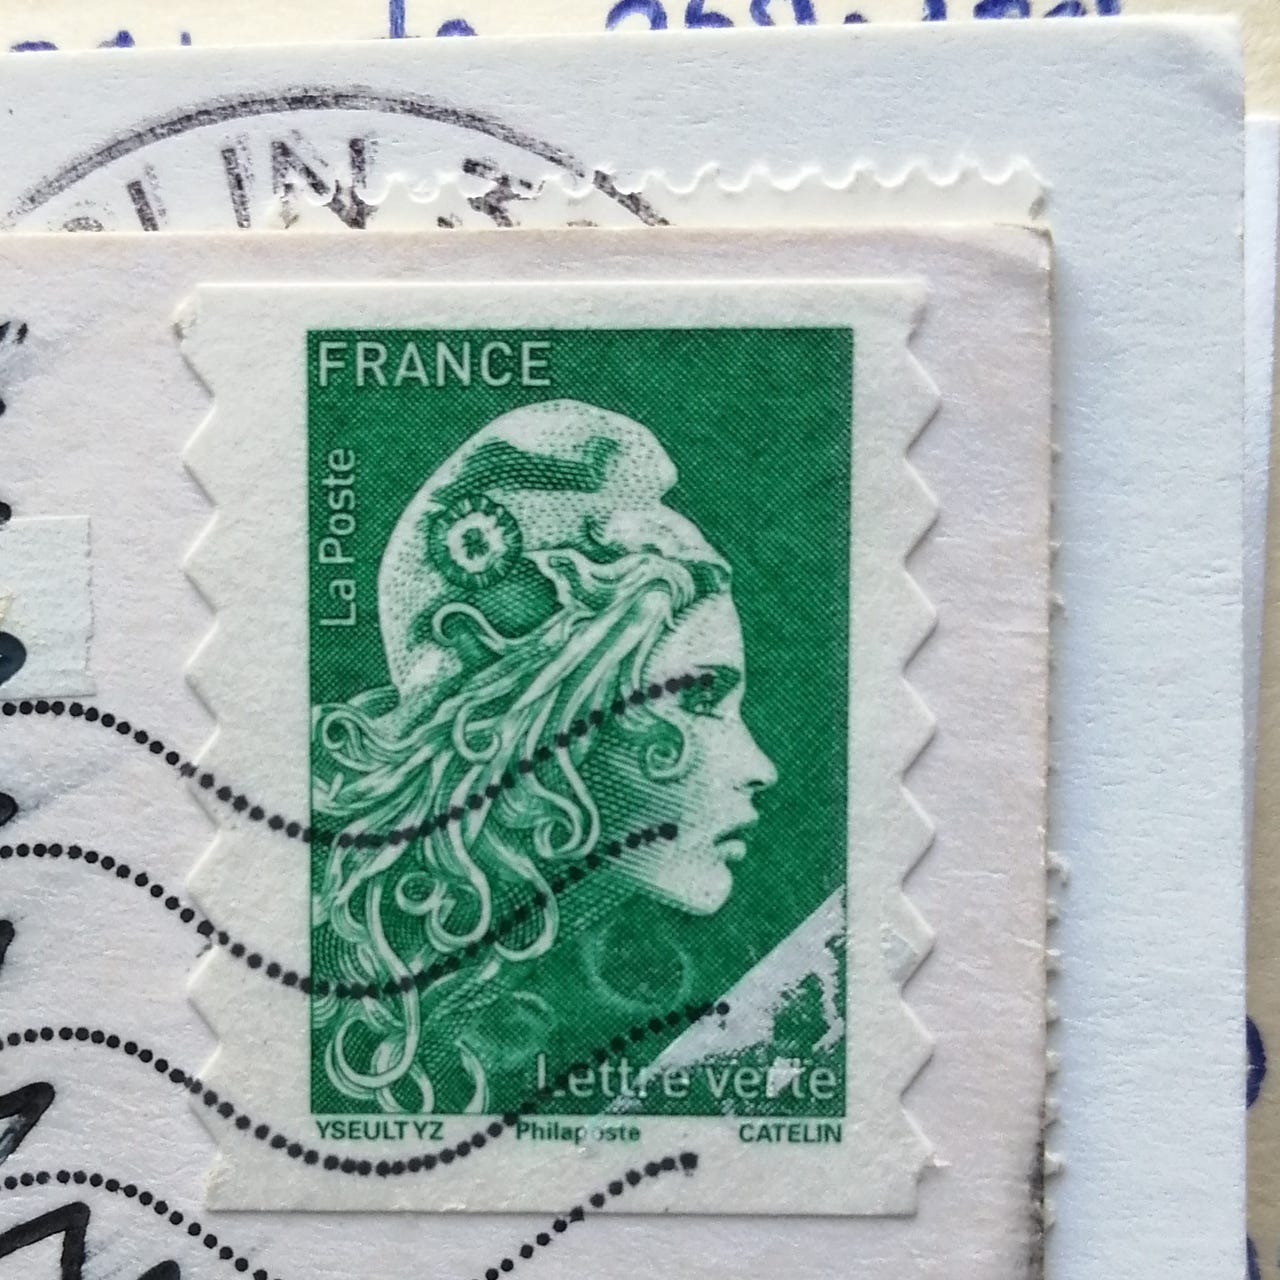 Artwork for Paris Stamp